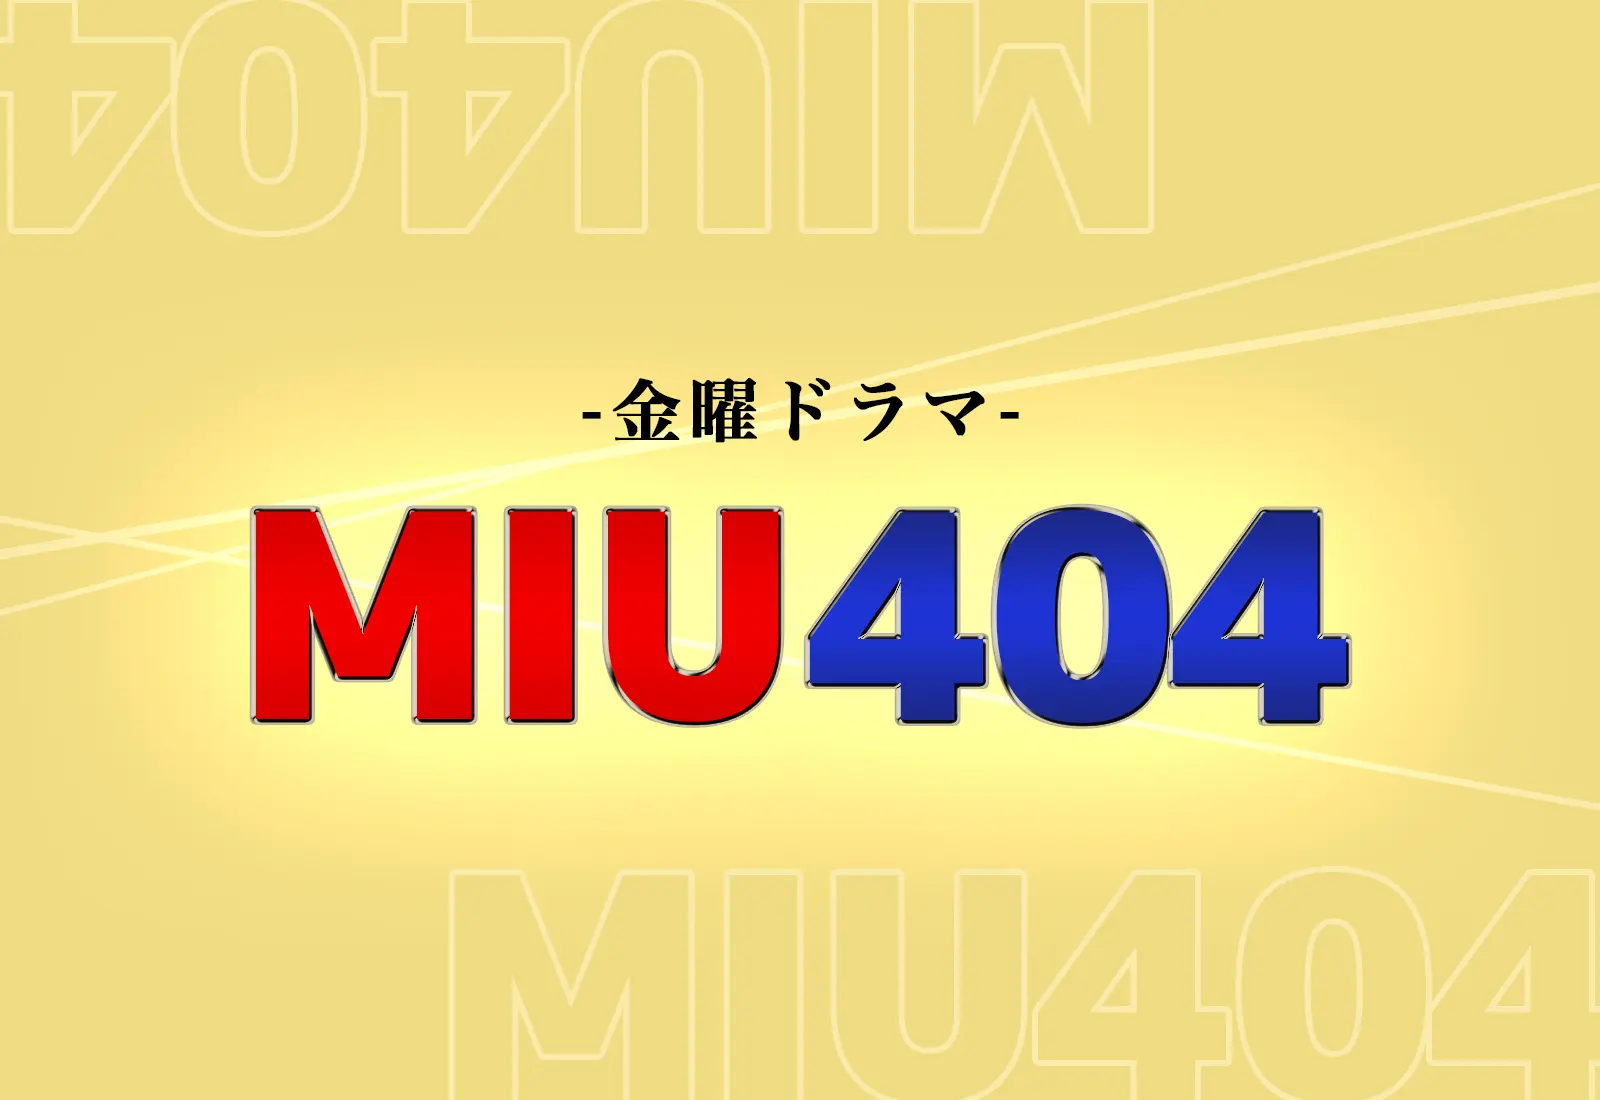 Miu404に続編決定 結末ラストで映画化やシーズン2に期待